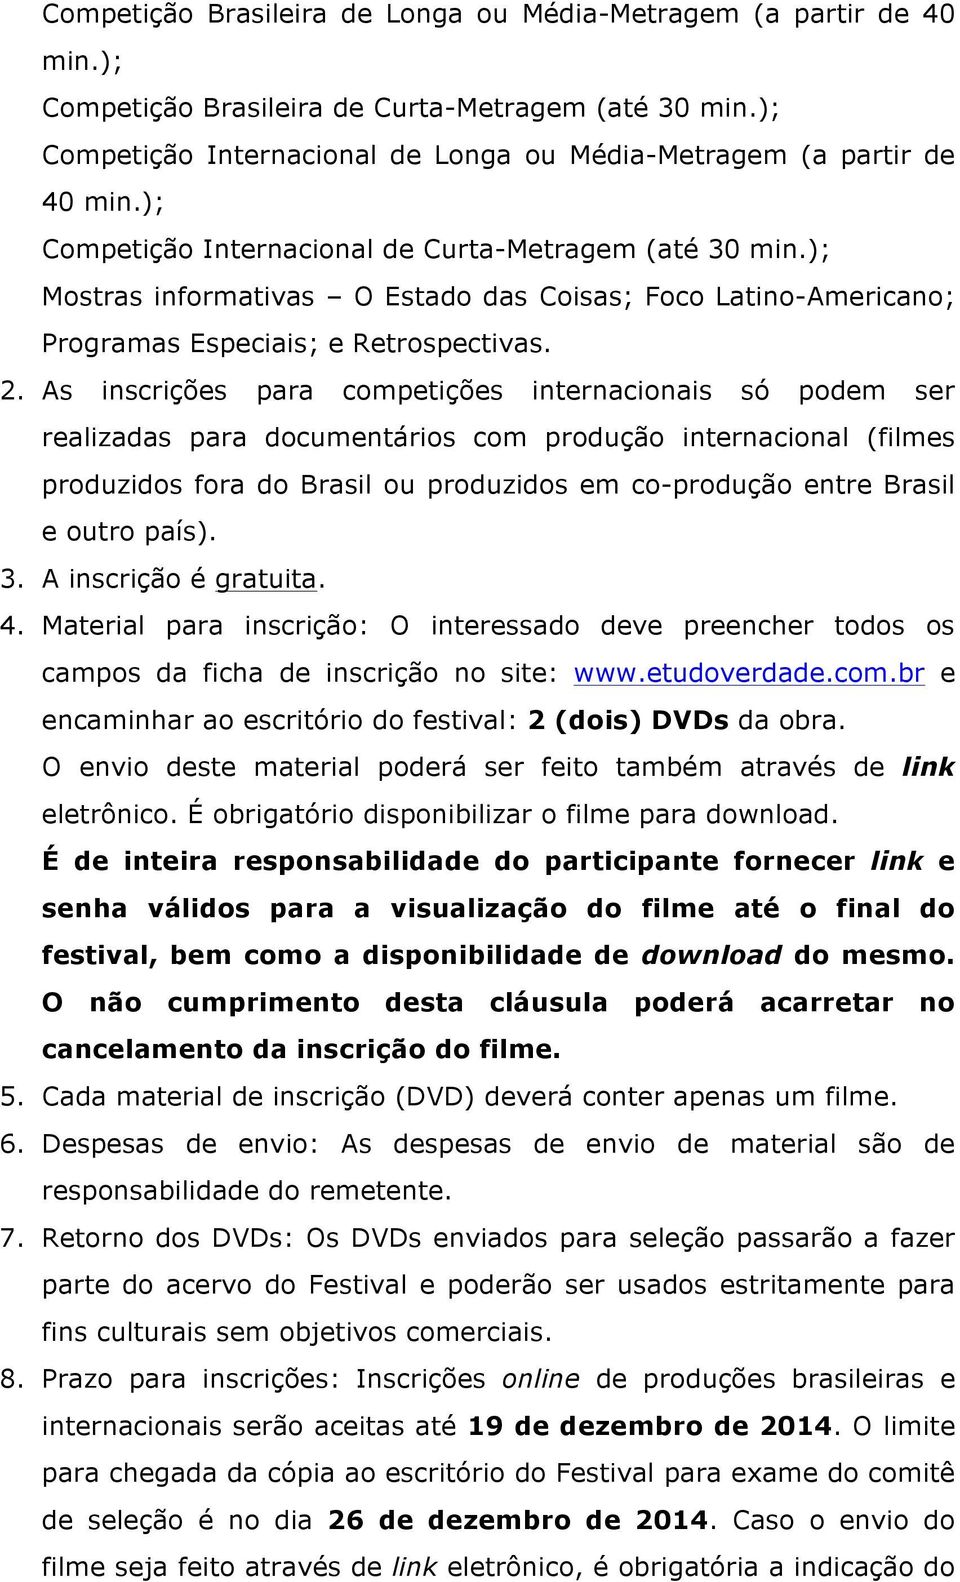 As inscrições para competições internacionais só podem ser realizadas para documentários com produção internacional (filmes produzidos fora do Brasil ou produzidos em co-produção entre Brasil e outro